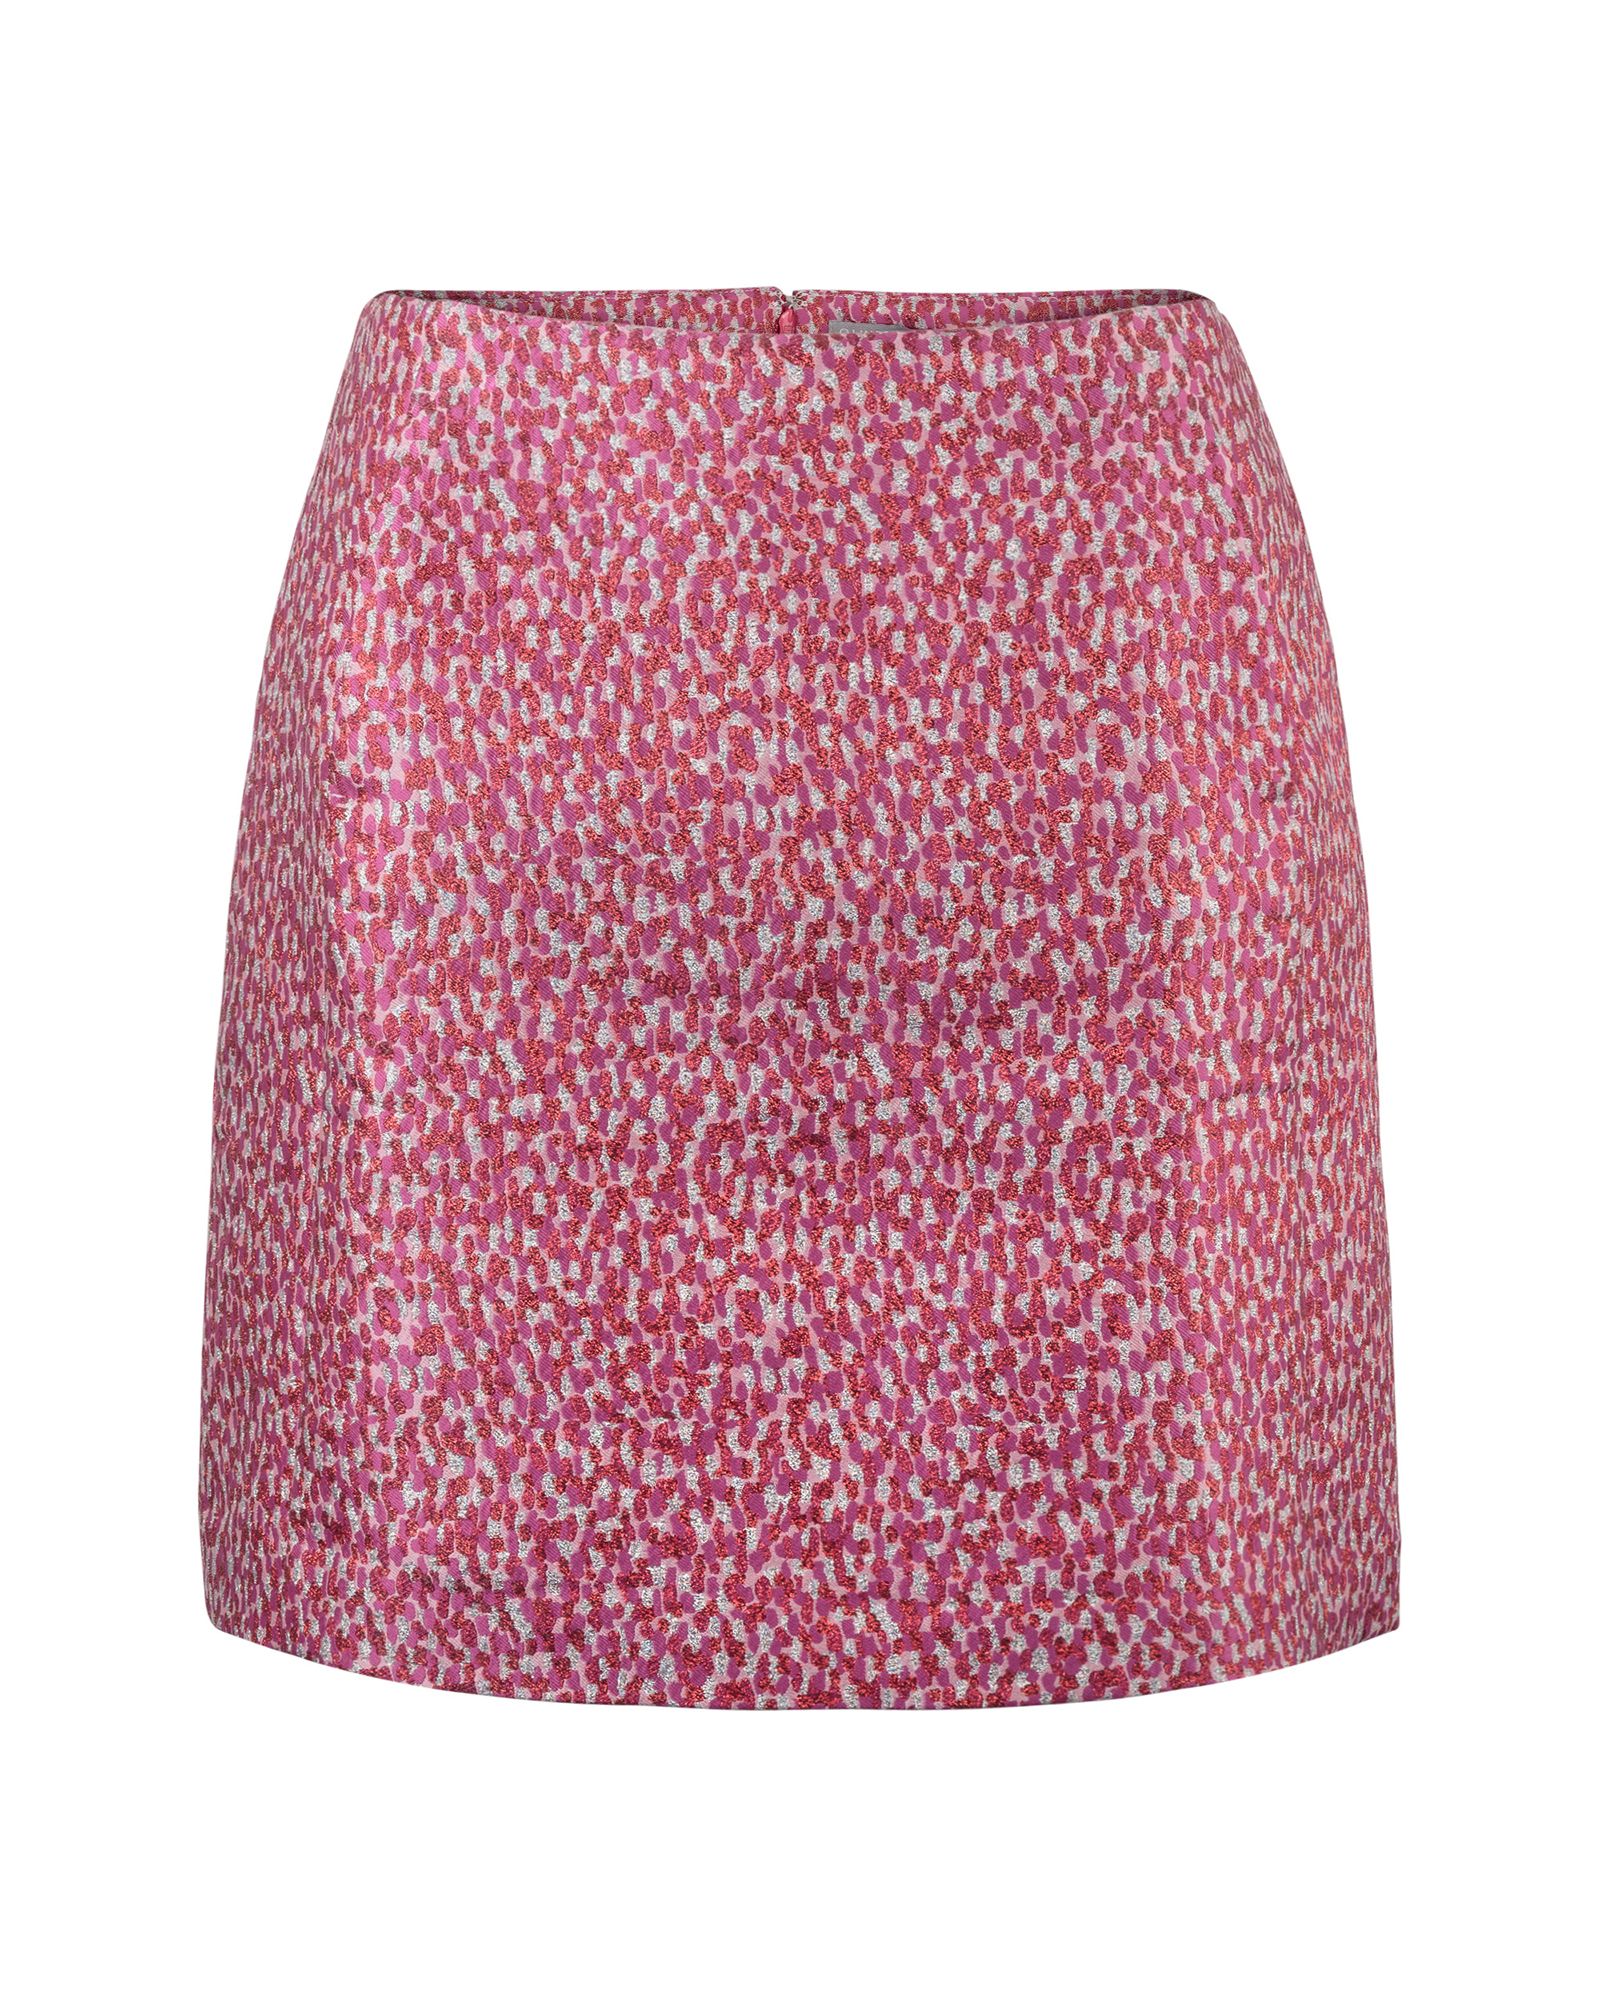 Sensation Sparkle Jacquard Mini Skirt | Oliver Bonas